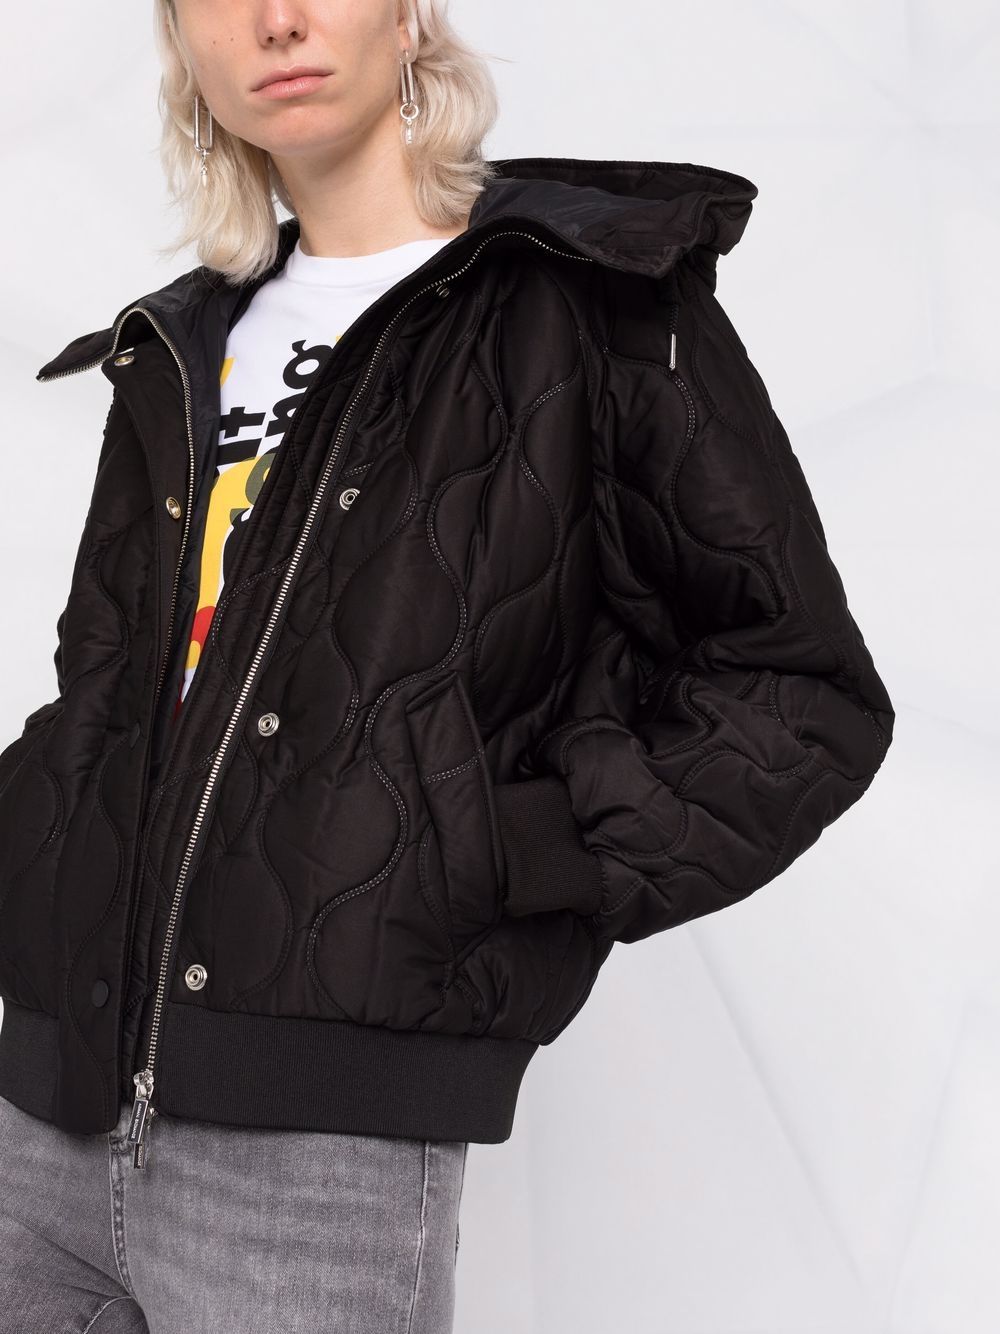 фото Armani exchange стеганая куртка с капюшоном